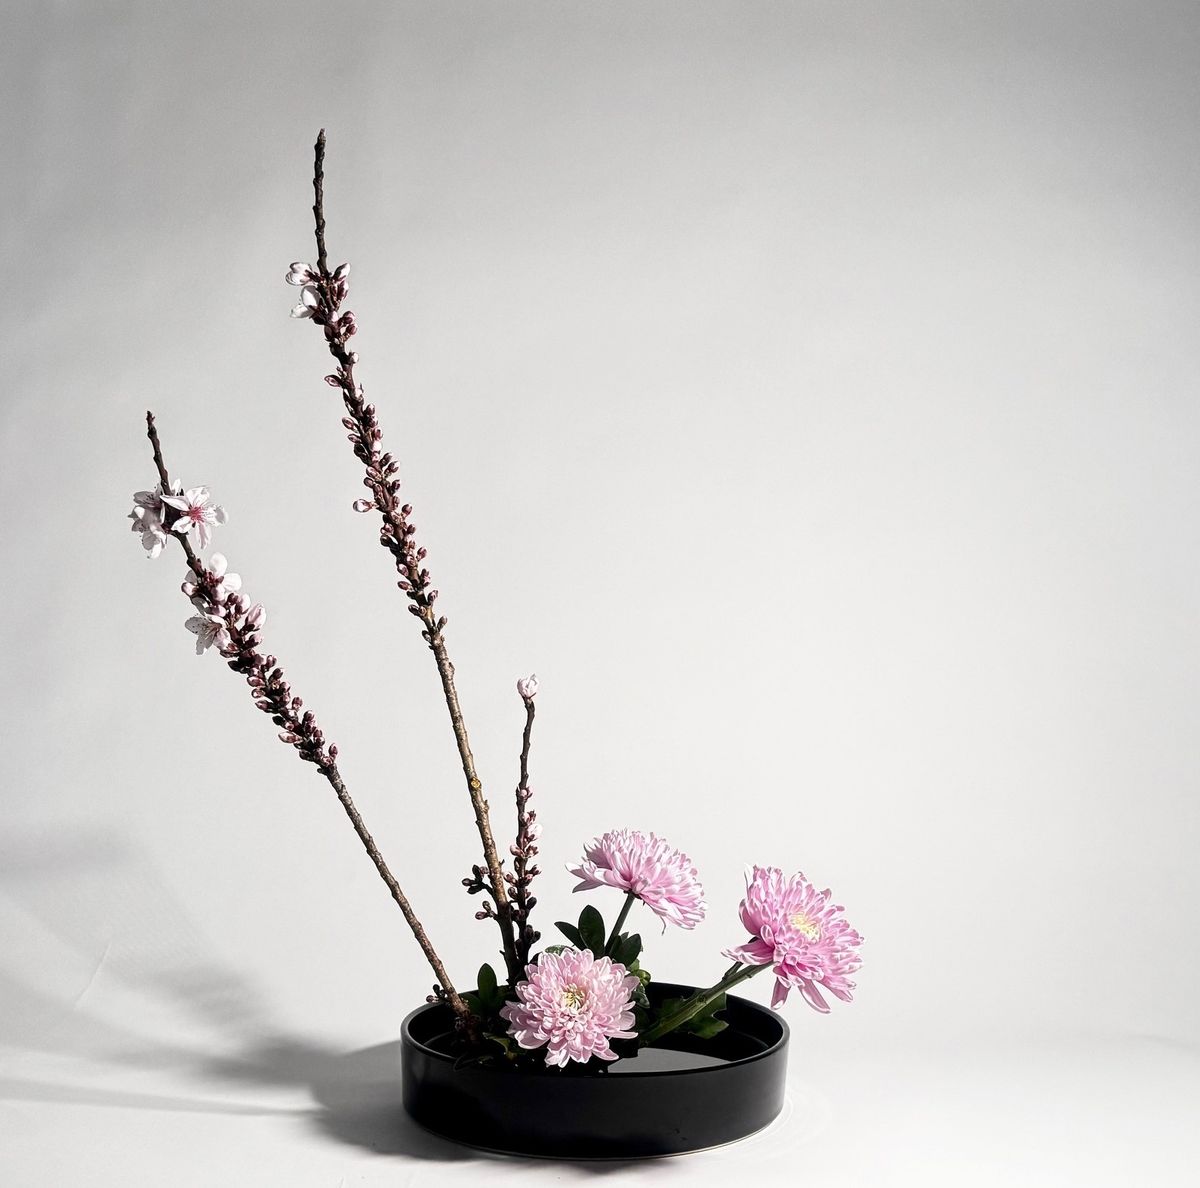 Talk | "How . . . do you make an Ikebana arrangement?"